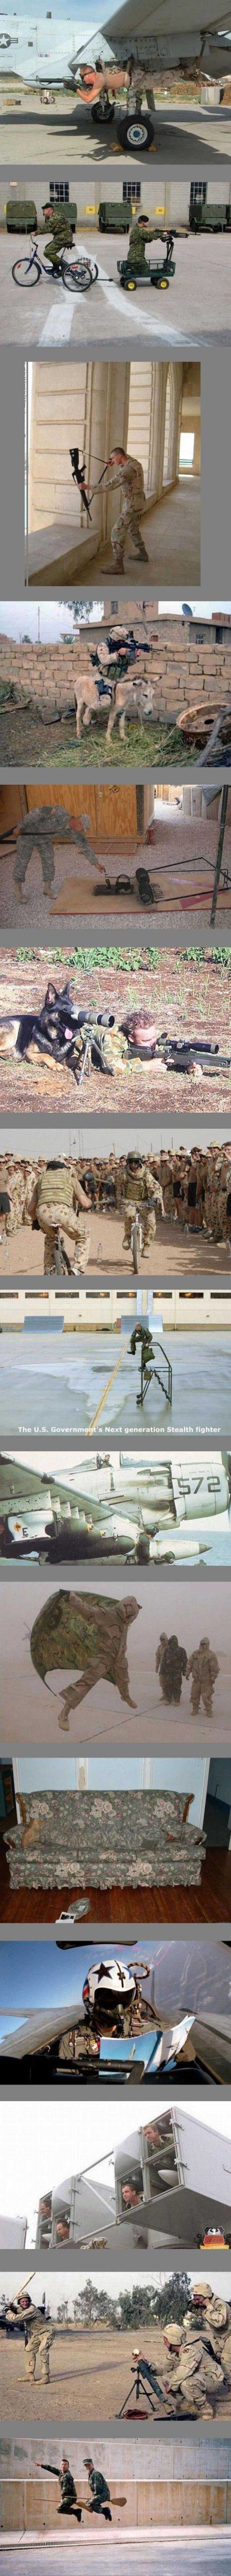 군사교육.jpg